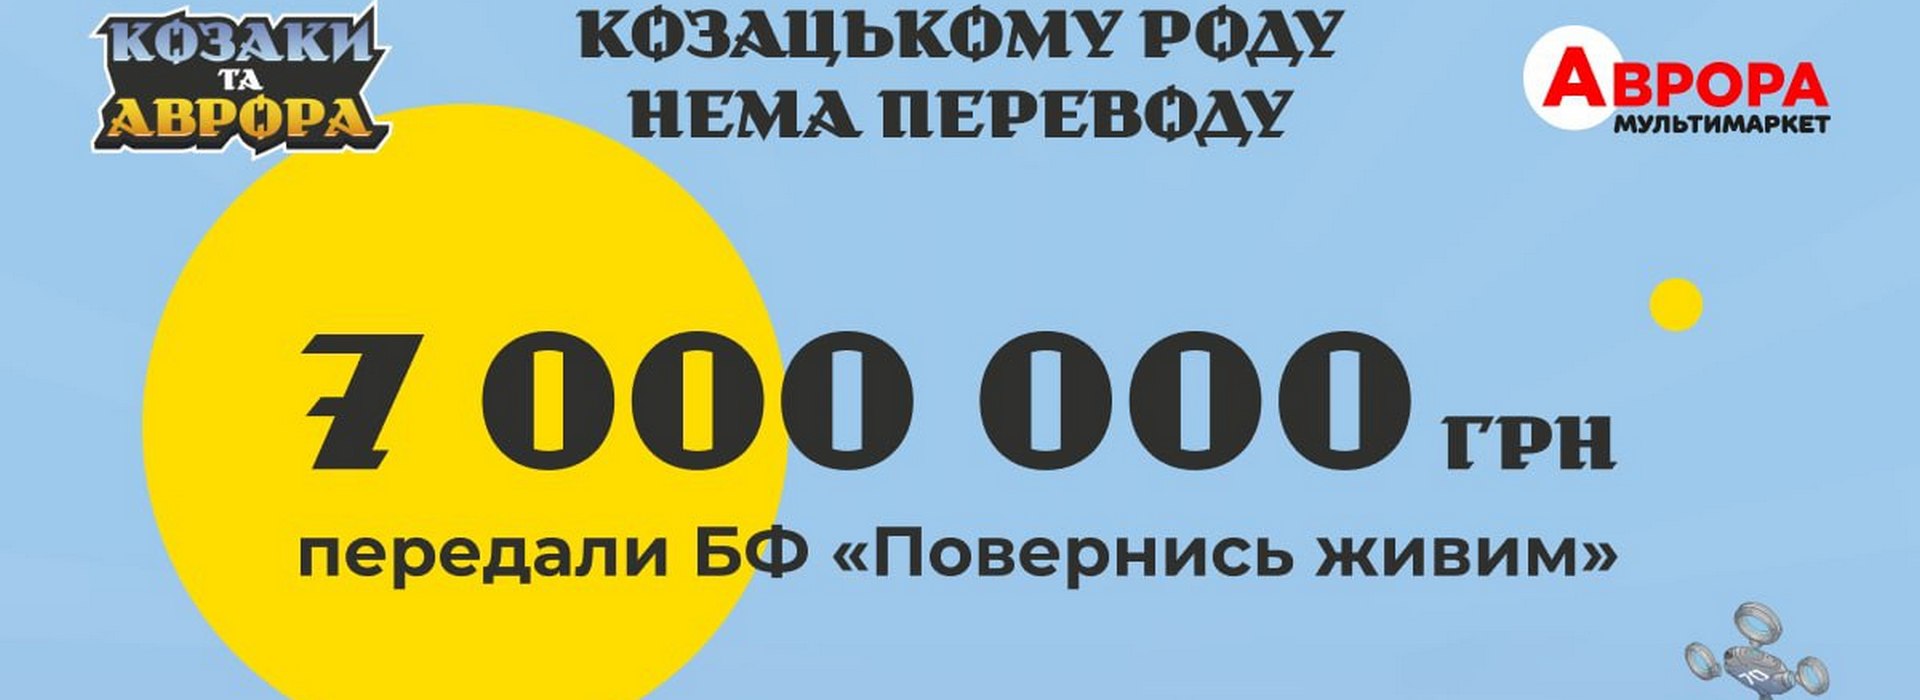 7 мільйонів для ЗСУ: мережа мультимаркетів «Аврора» помножила на два зібрані впродовж акції «Козаки та Аврора» 3,5 мільйони